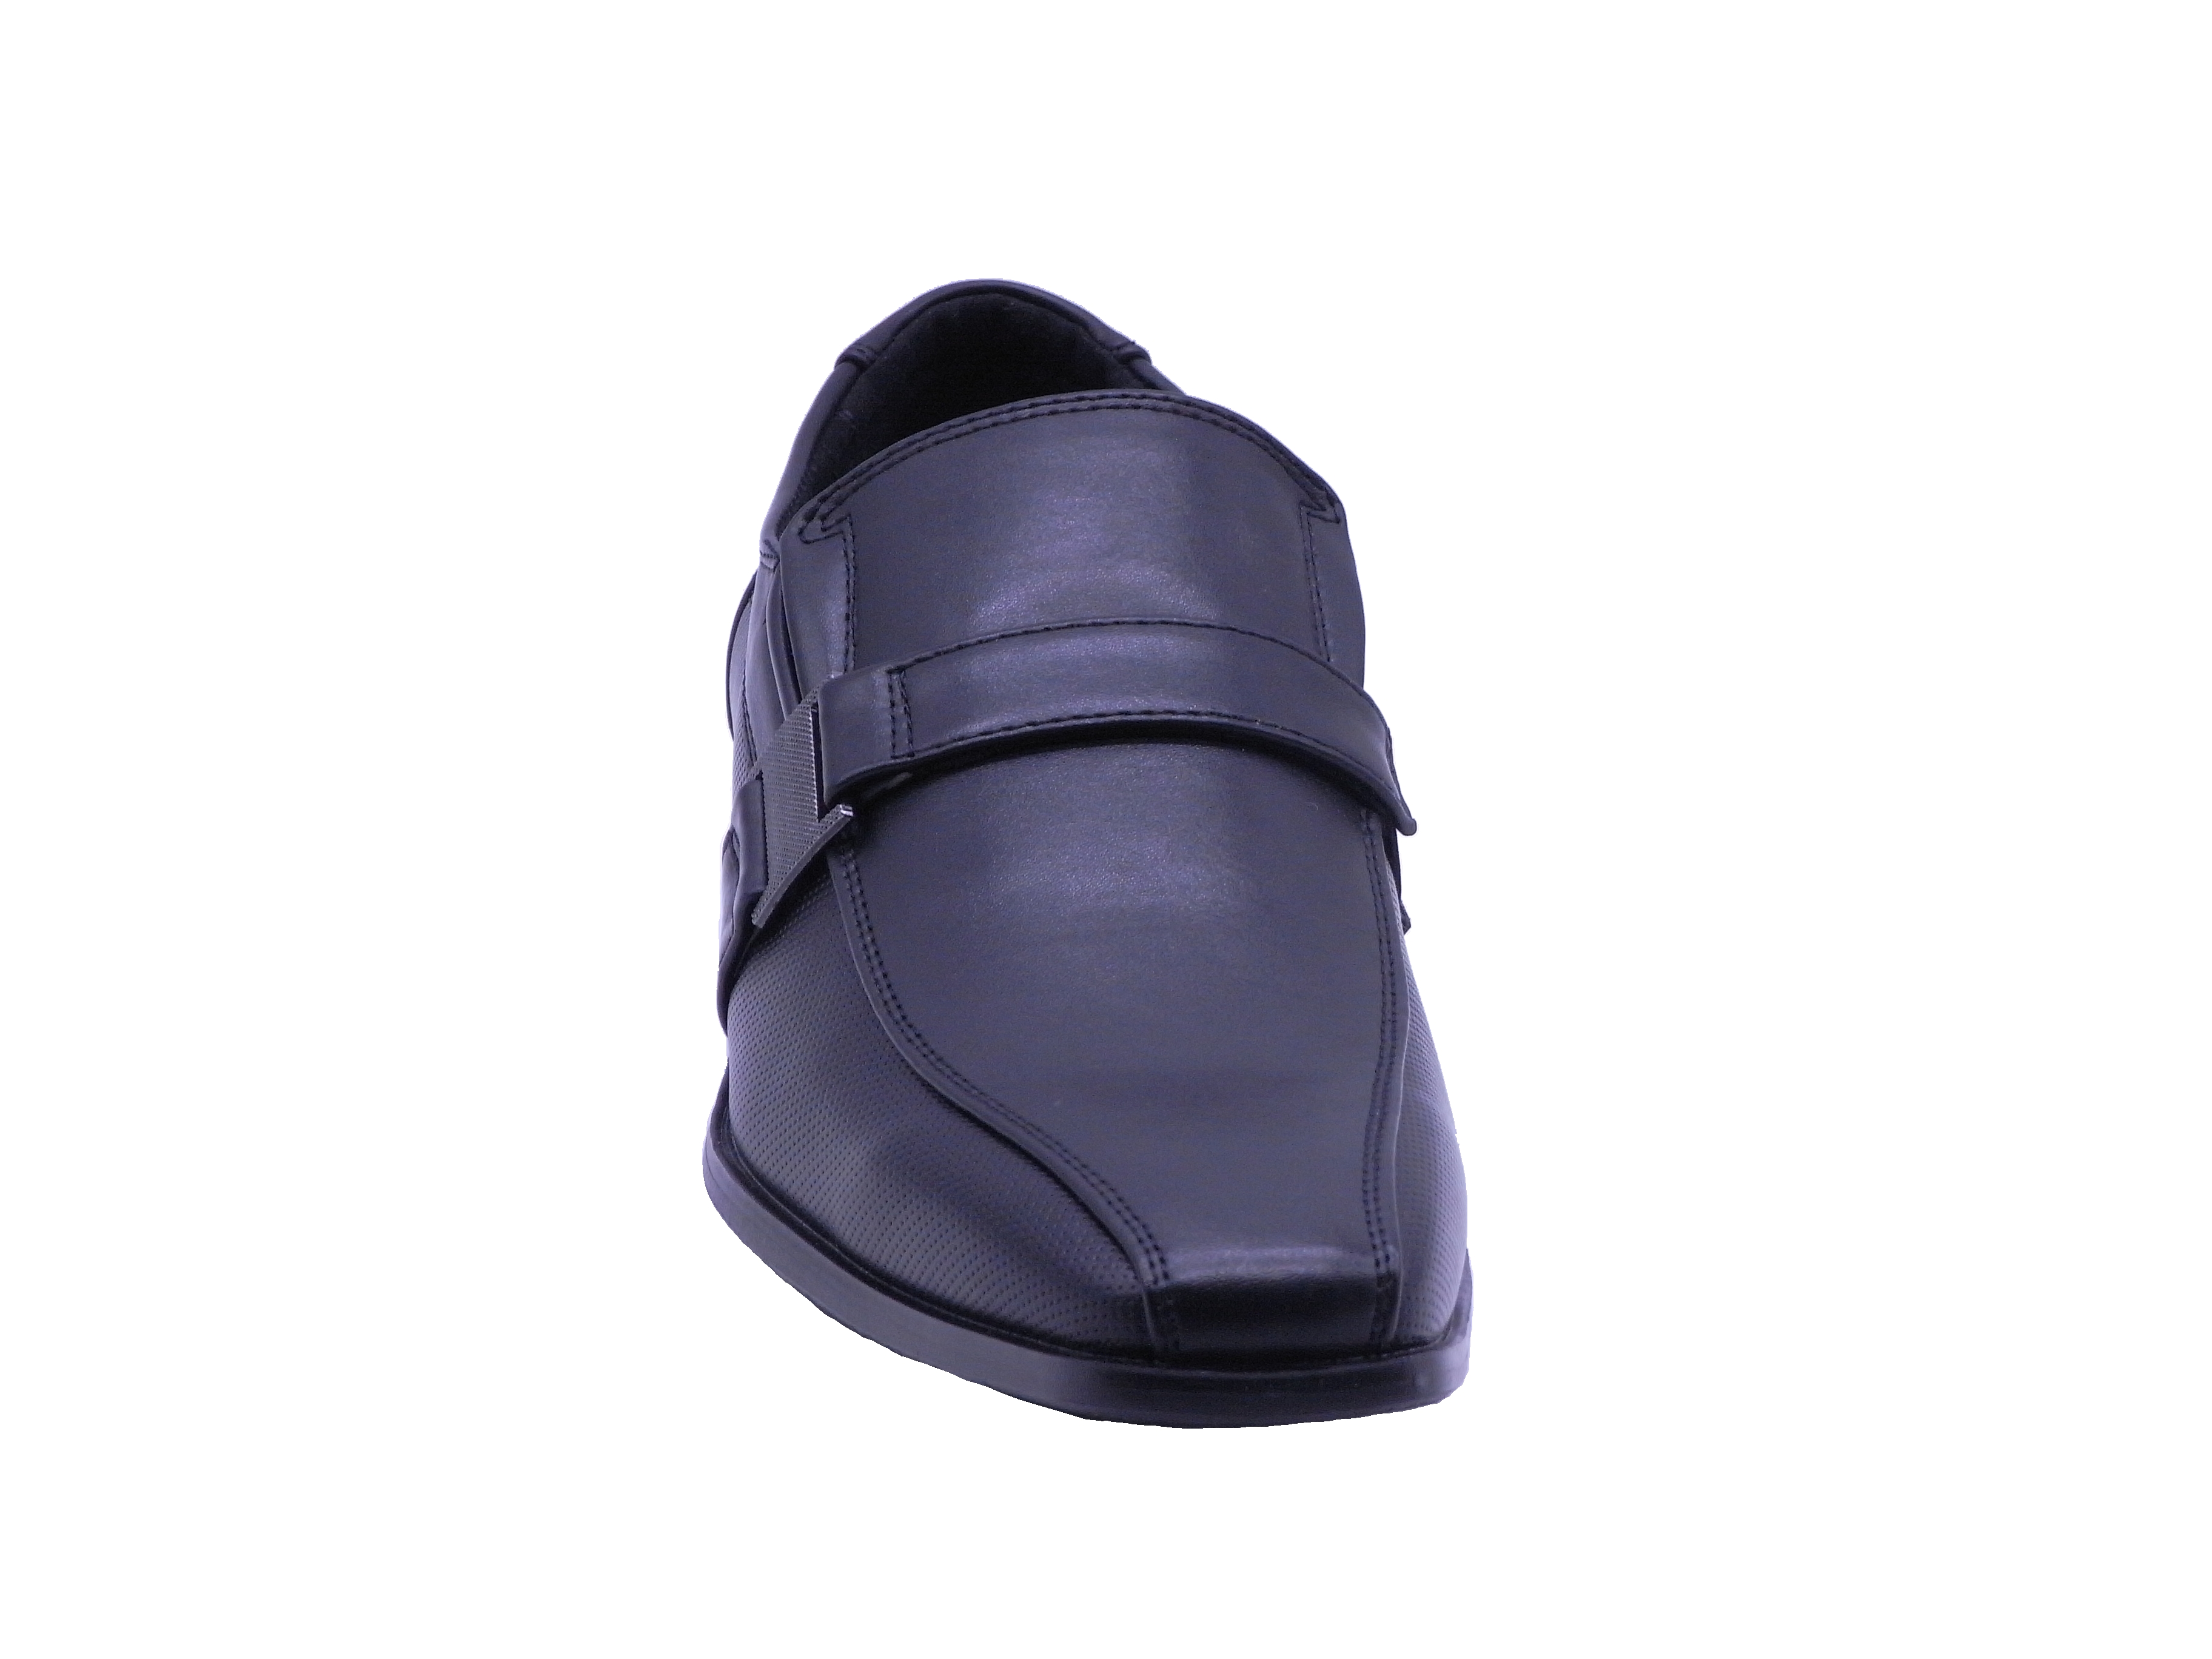 Men Shoes Slip On Strap Loafer Black Color Size US8 - image 3 of 5